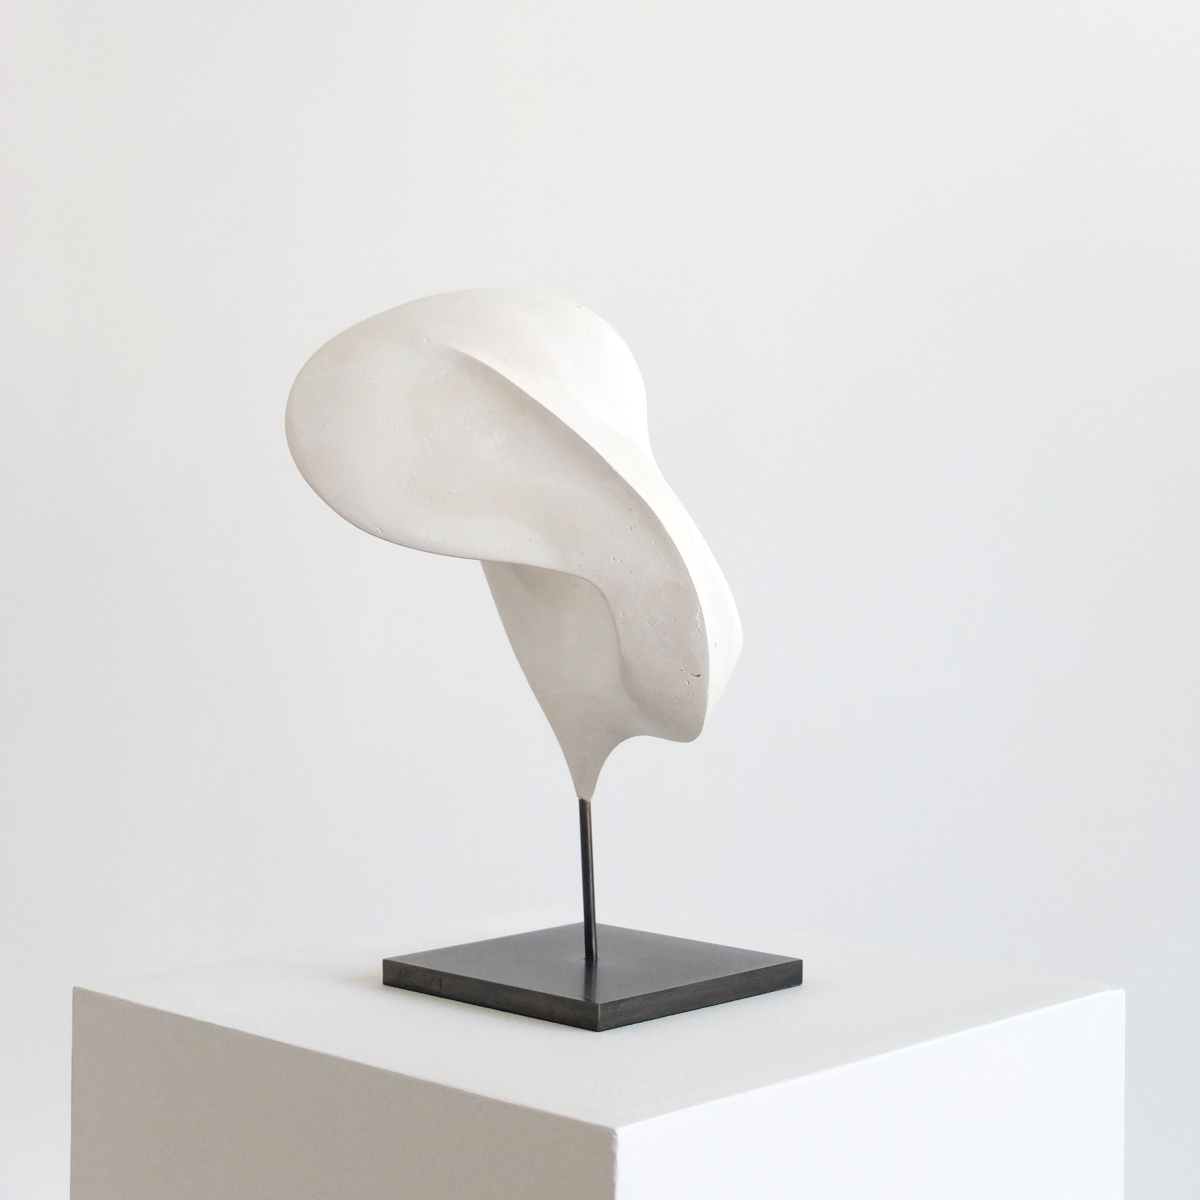 Alex Palenski sculpture abstraite plâtre et acier os blanc